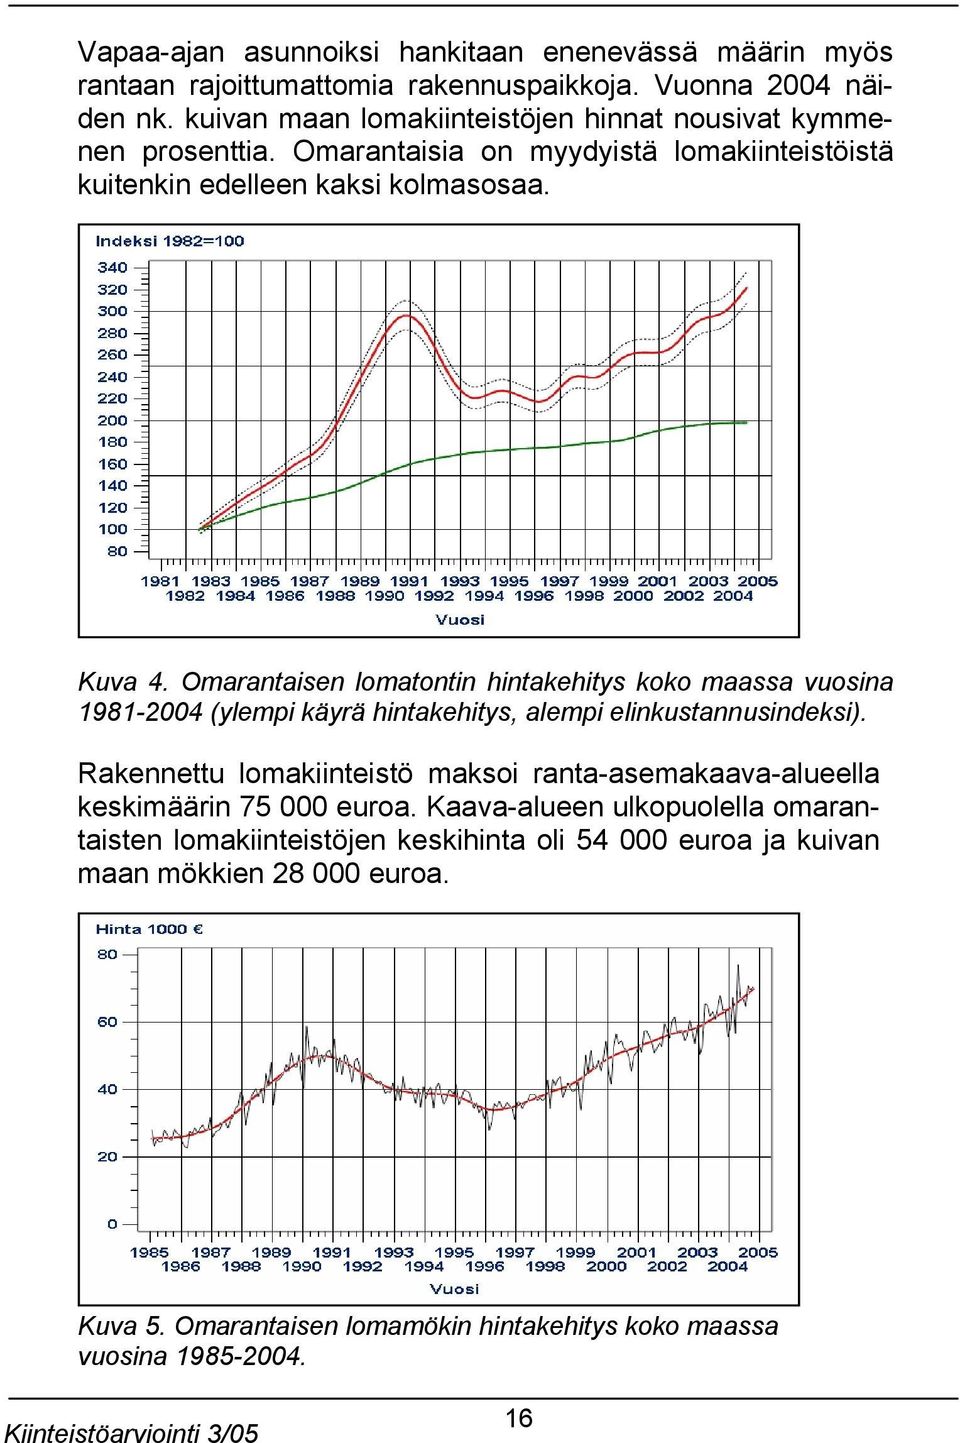 Omarantaisen lomatontin hintakehitys koko maassa vuosina 1981-2004 (ylempi käyrä hintakehitys, alempi elinkustannusindeksi).